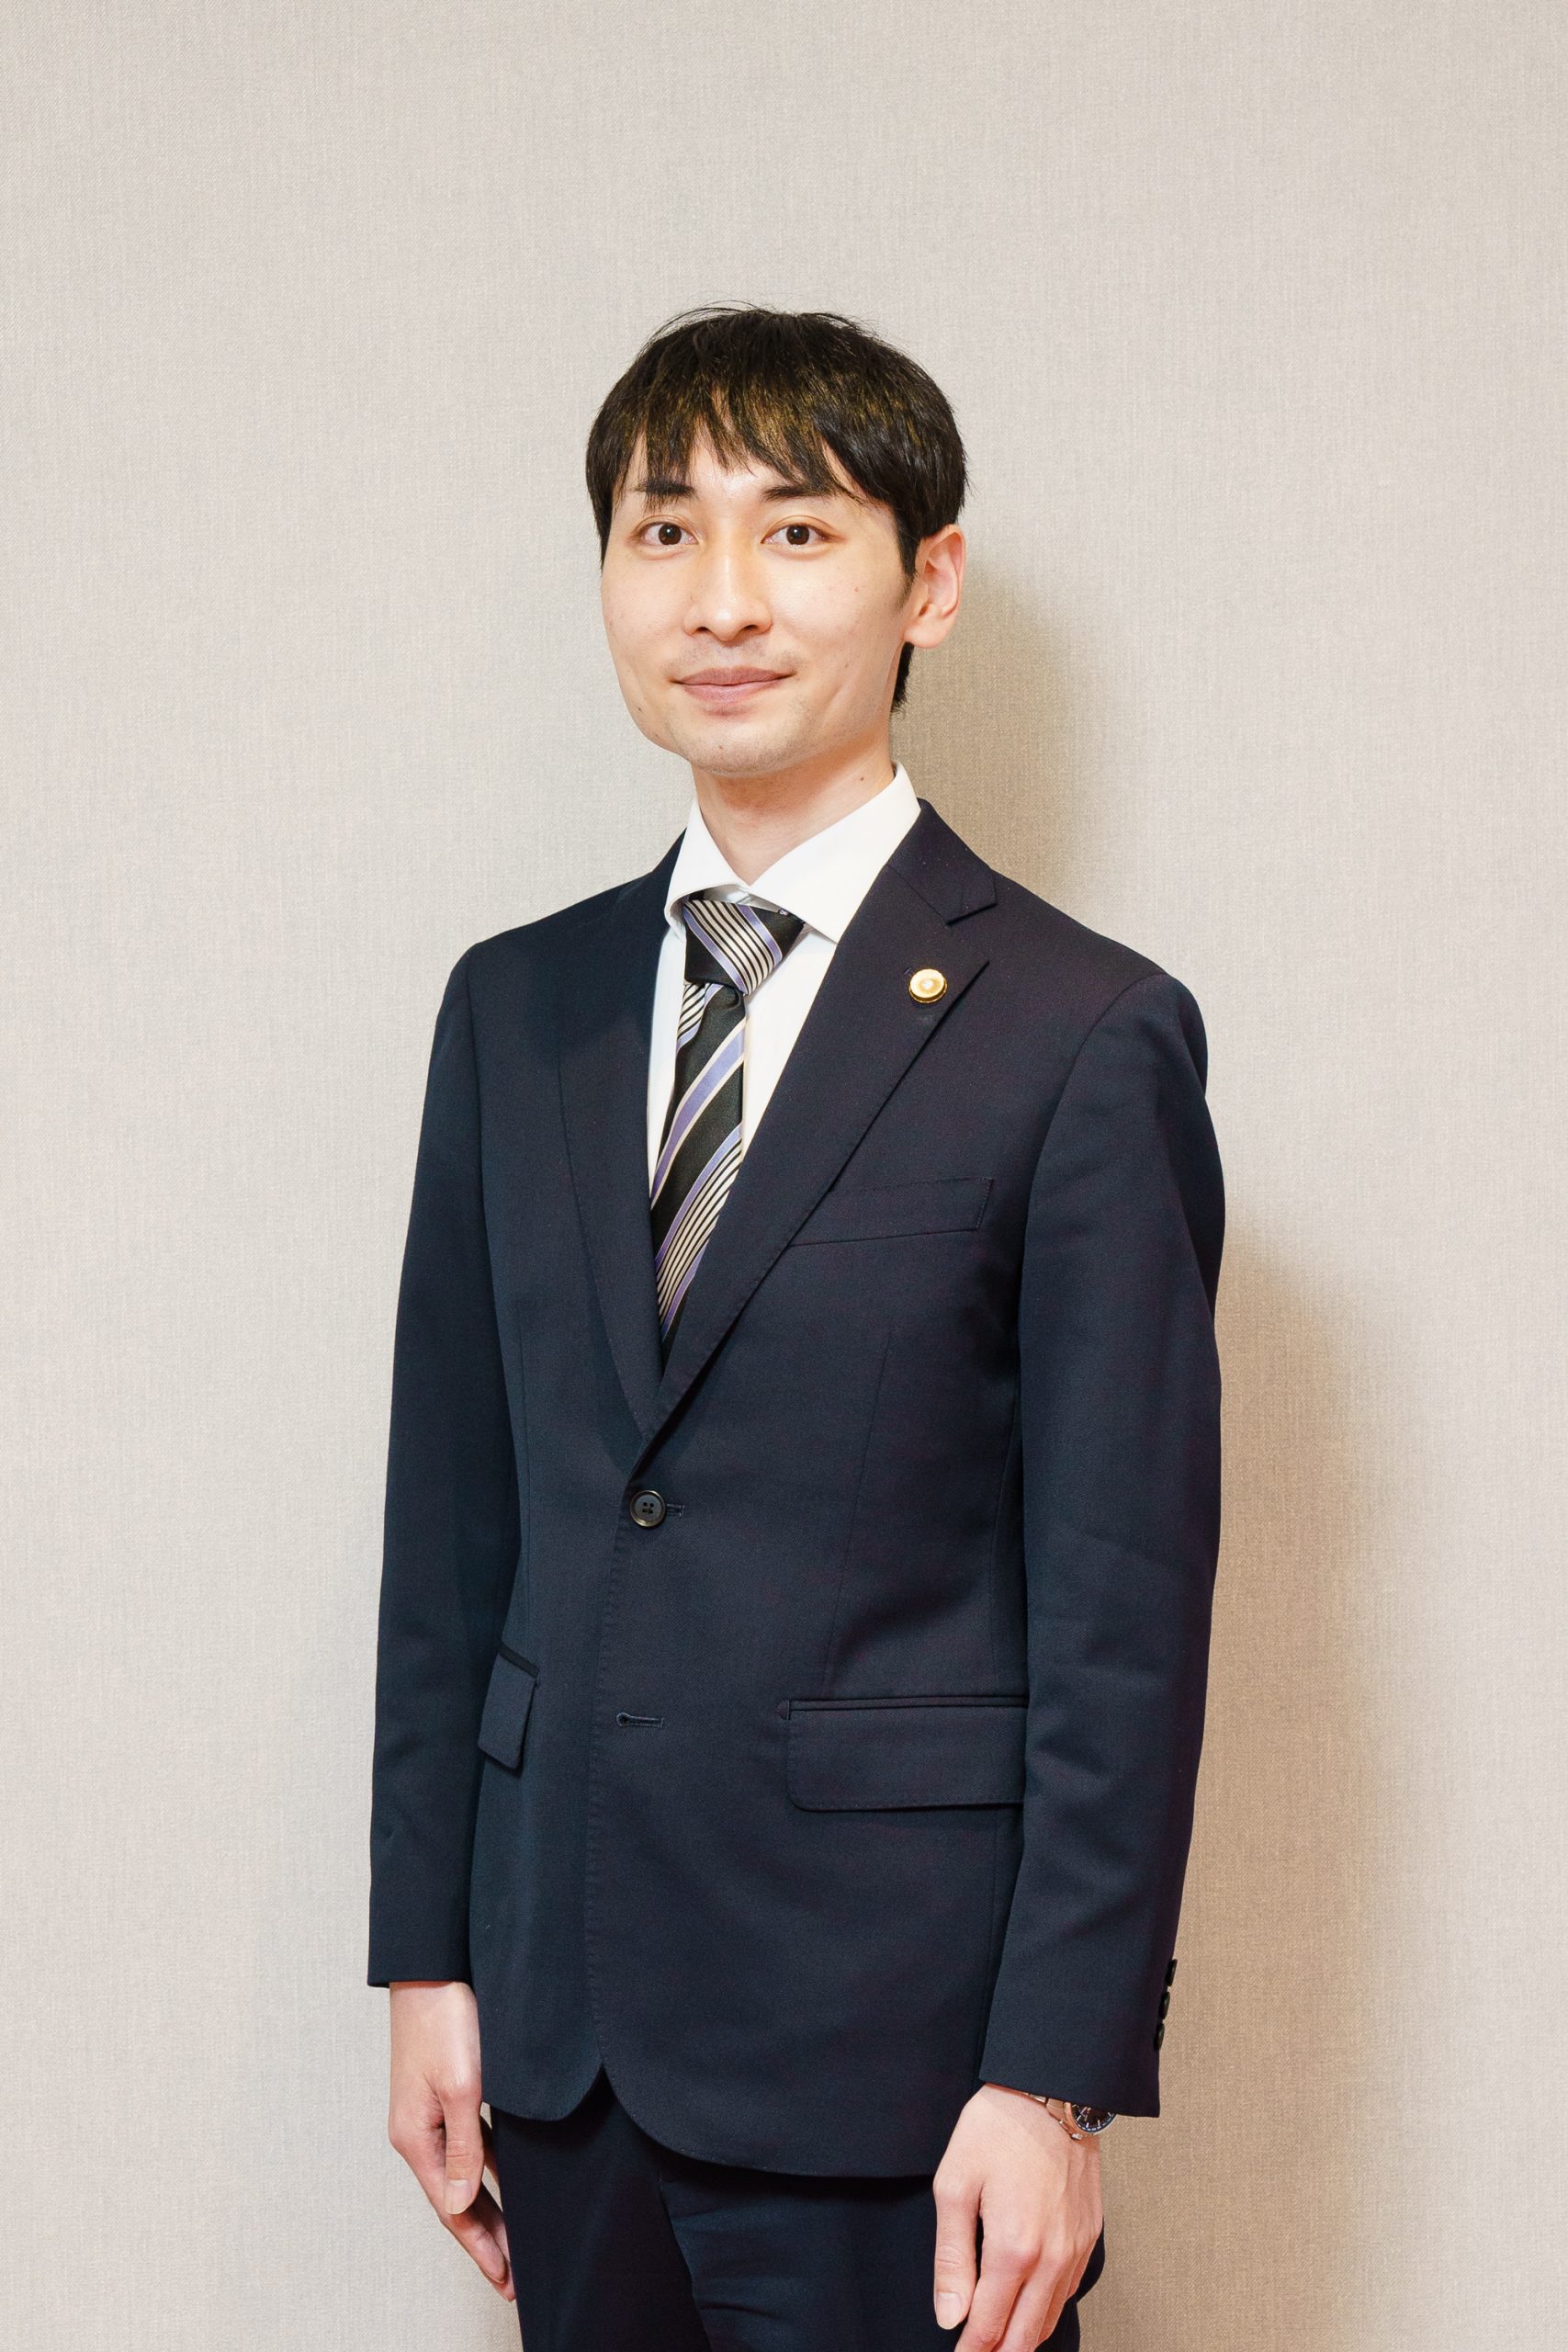 大阪弁護士会所属、大阪和音事務所弁護士の安部雄貴の写真。